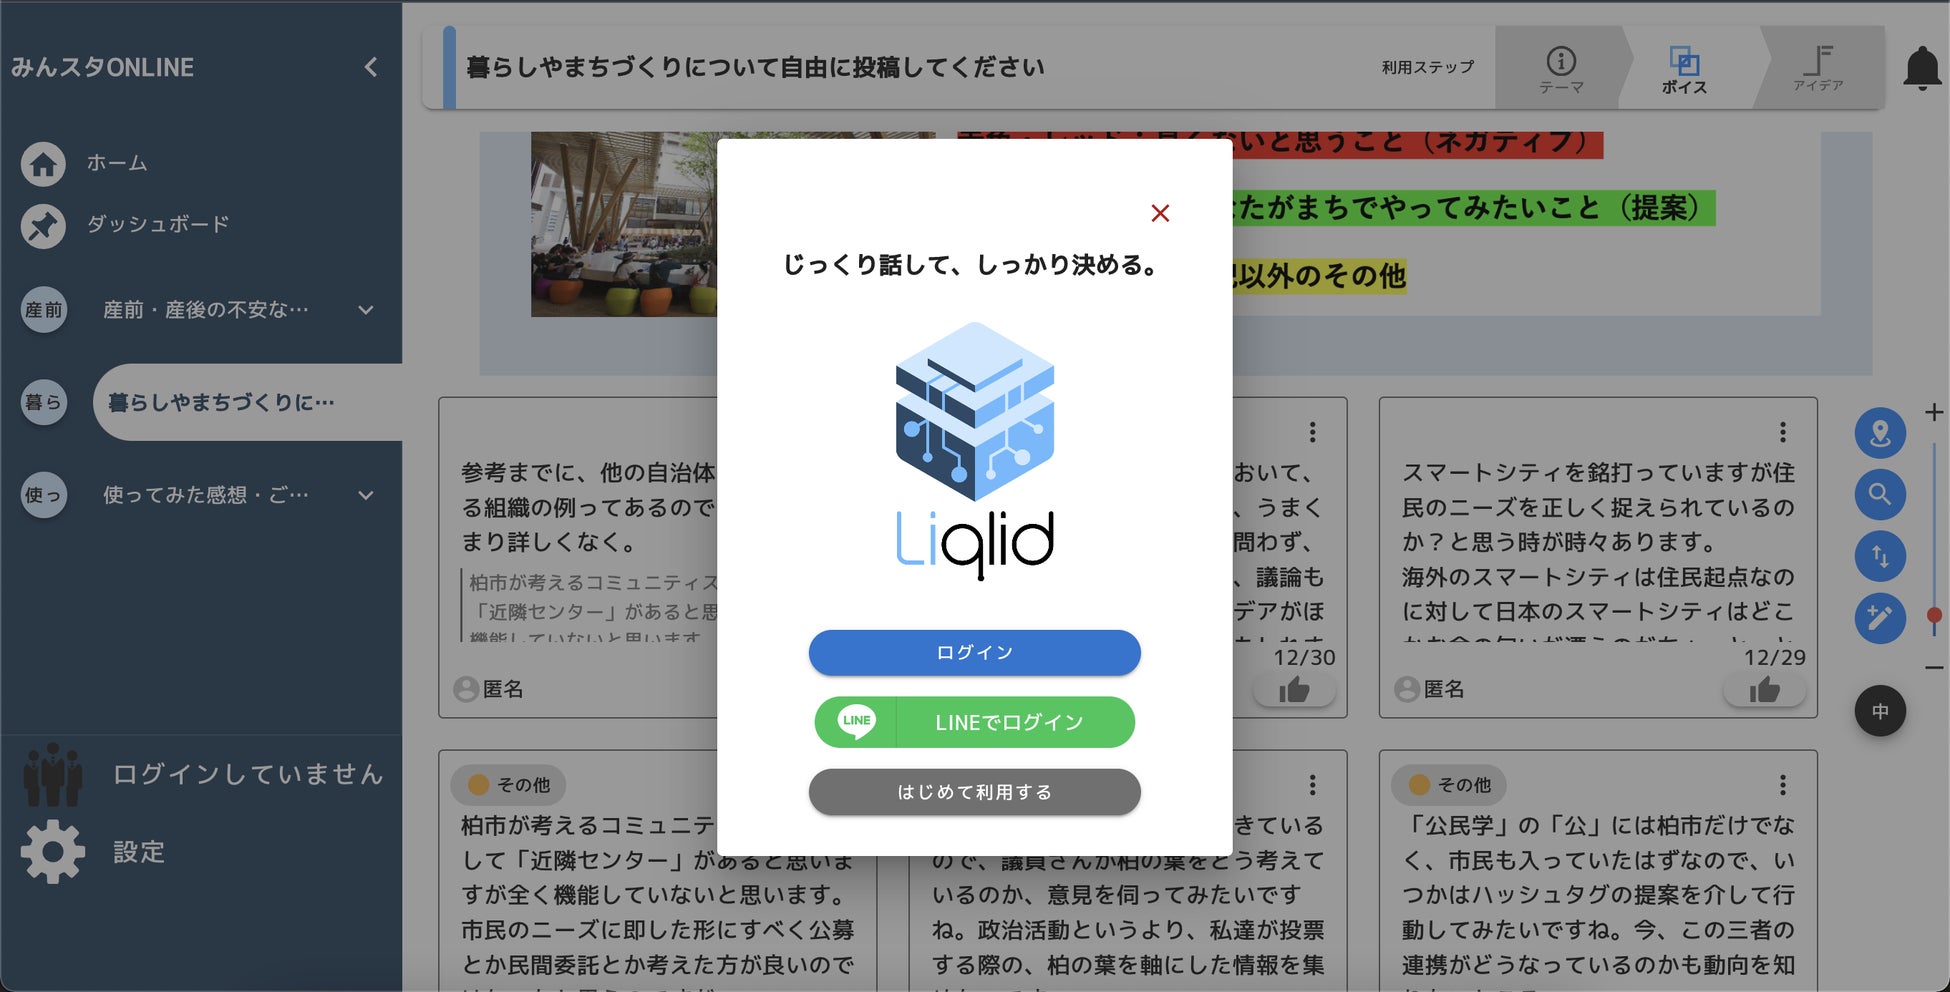 Liquitous、市民や行政職員の皆さんのアイデアや声をもとに、独自開発の市民参加型合意形成プラットフォーム「Liqlid」の新規バージョンをリリースのサブ画像2